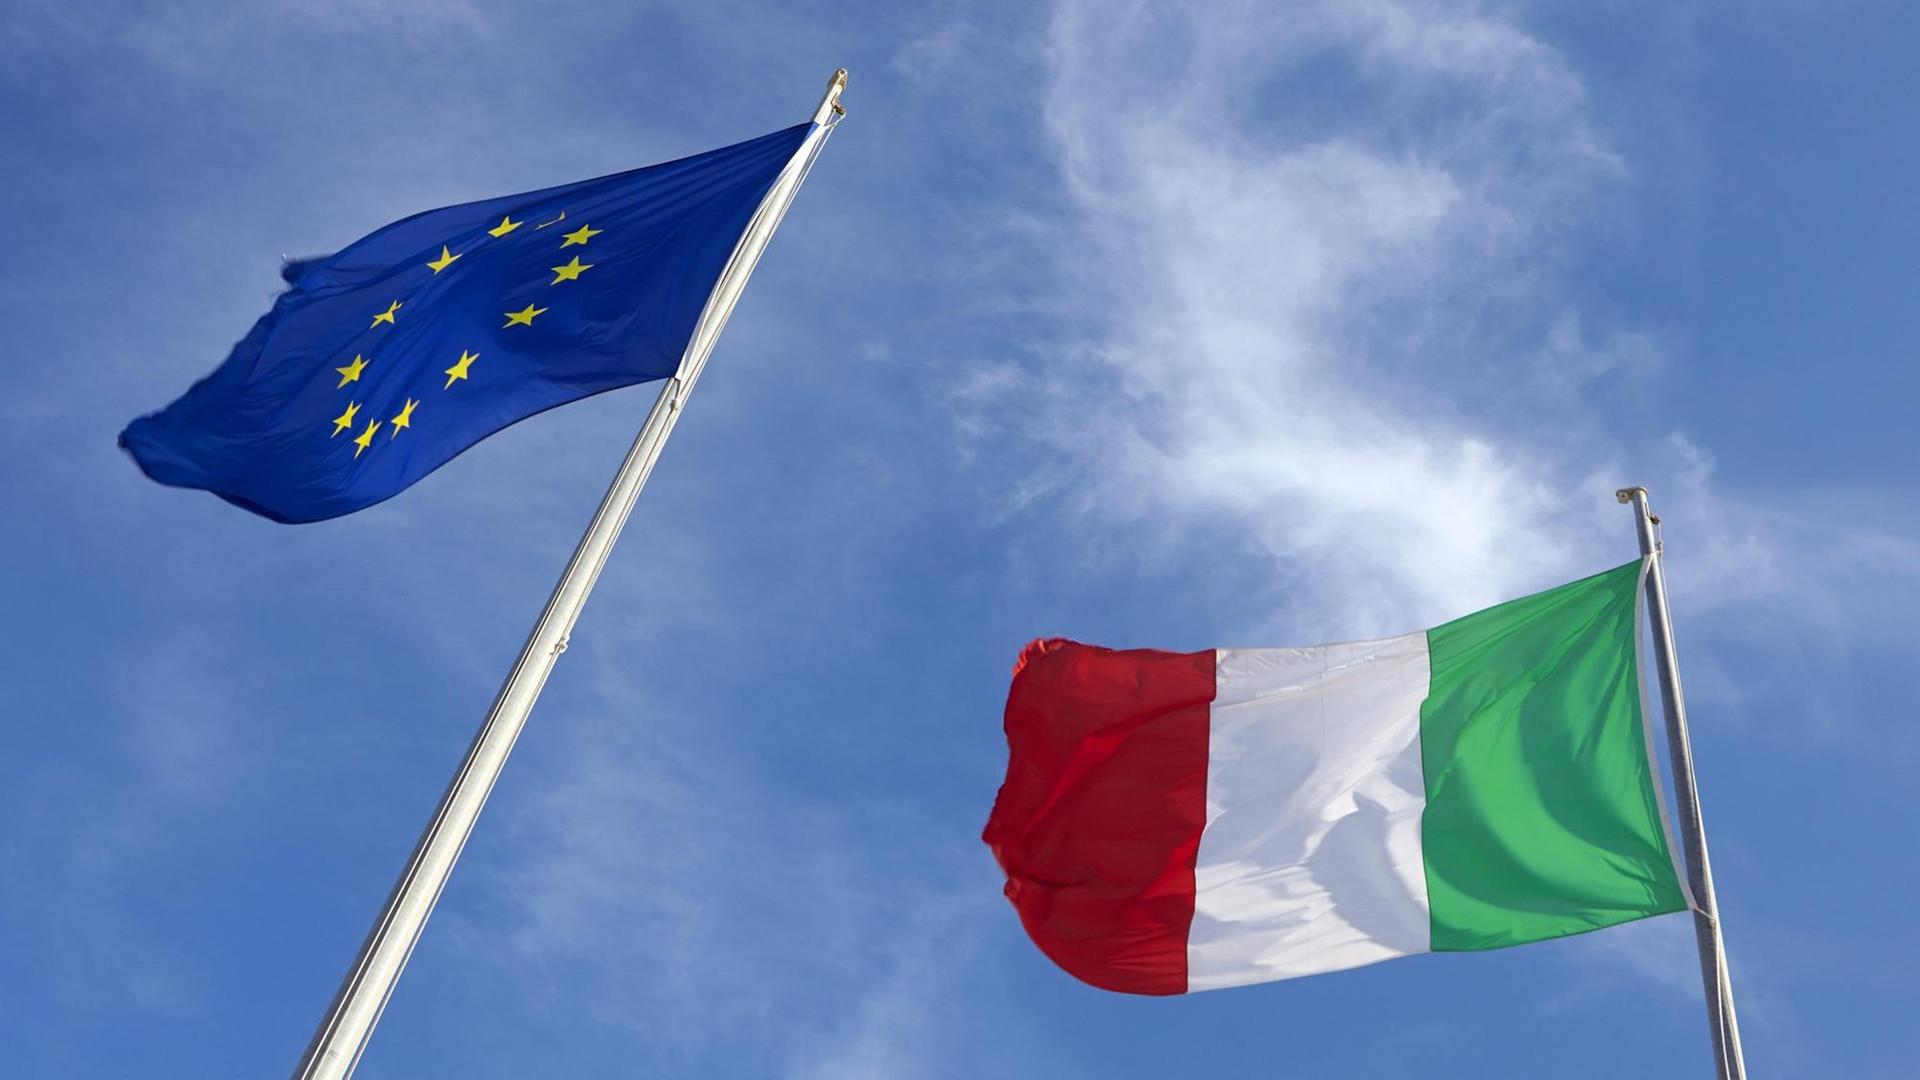 Flaggen von Europa und Italien im Wind